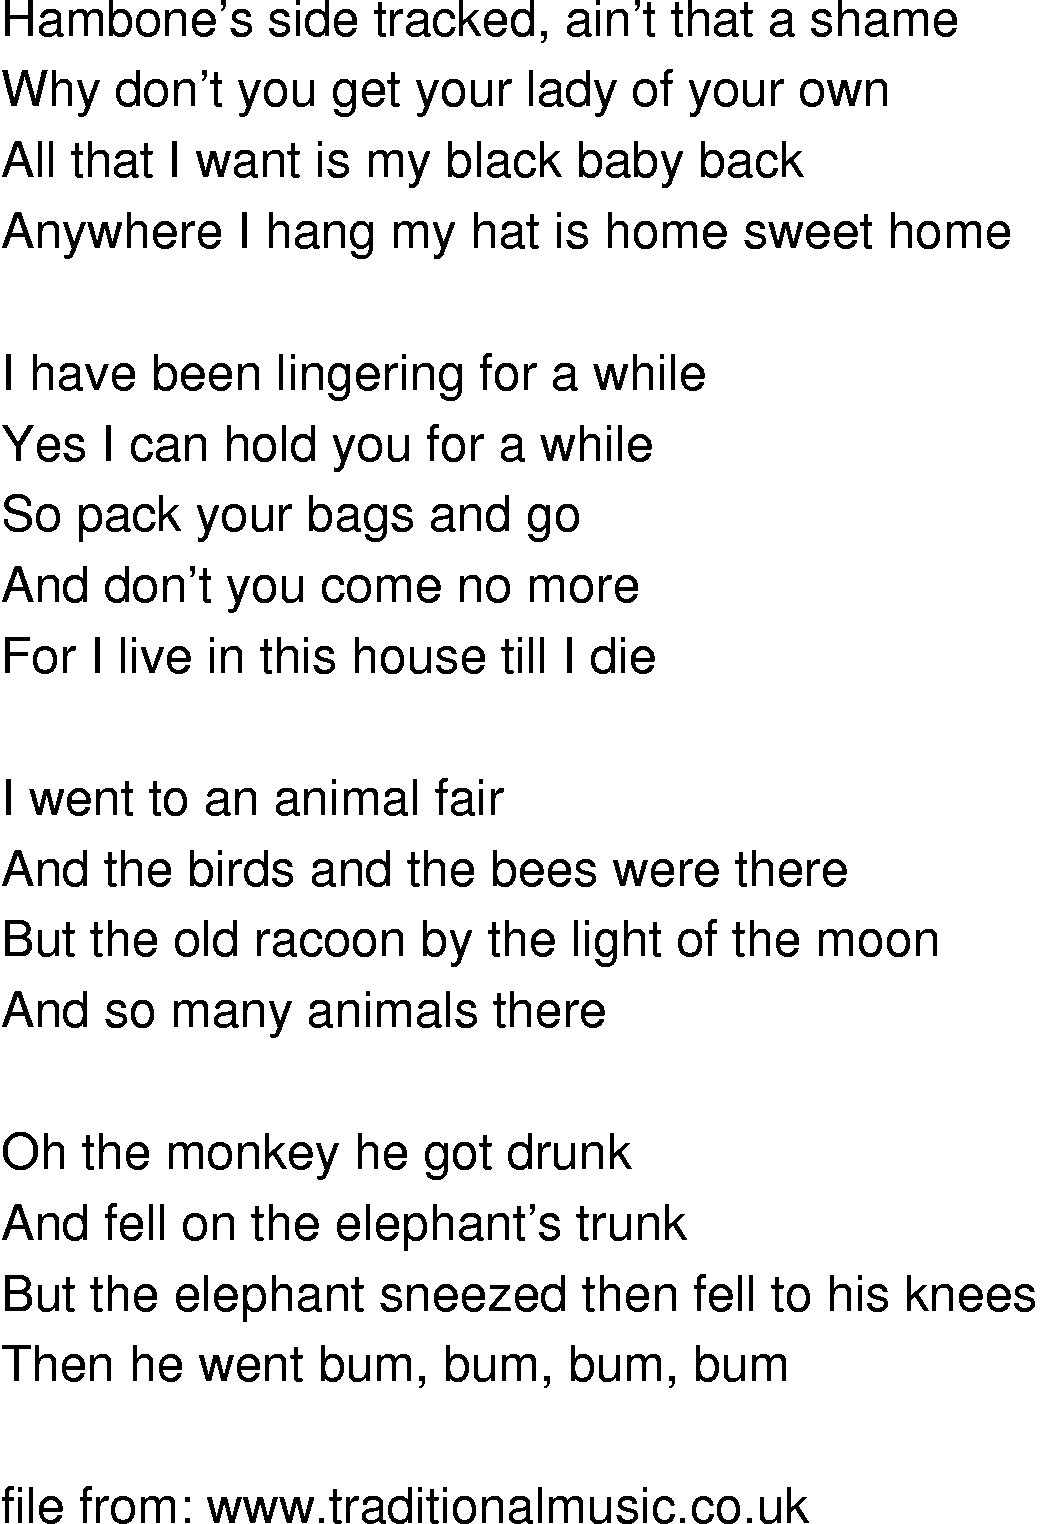 Old-Time (oldtimey) Song Lyrics - i want my black baby back